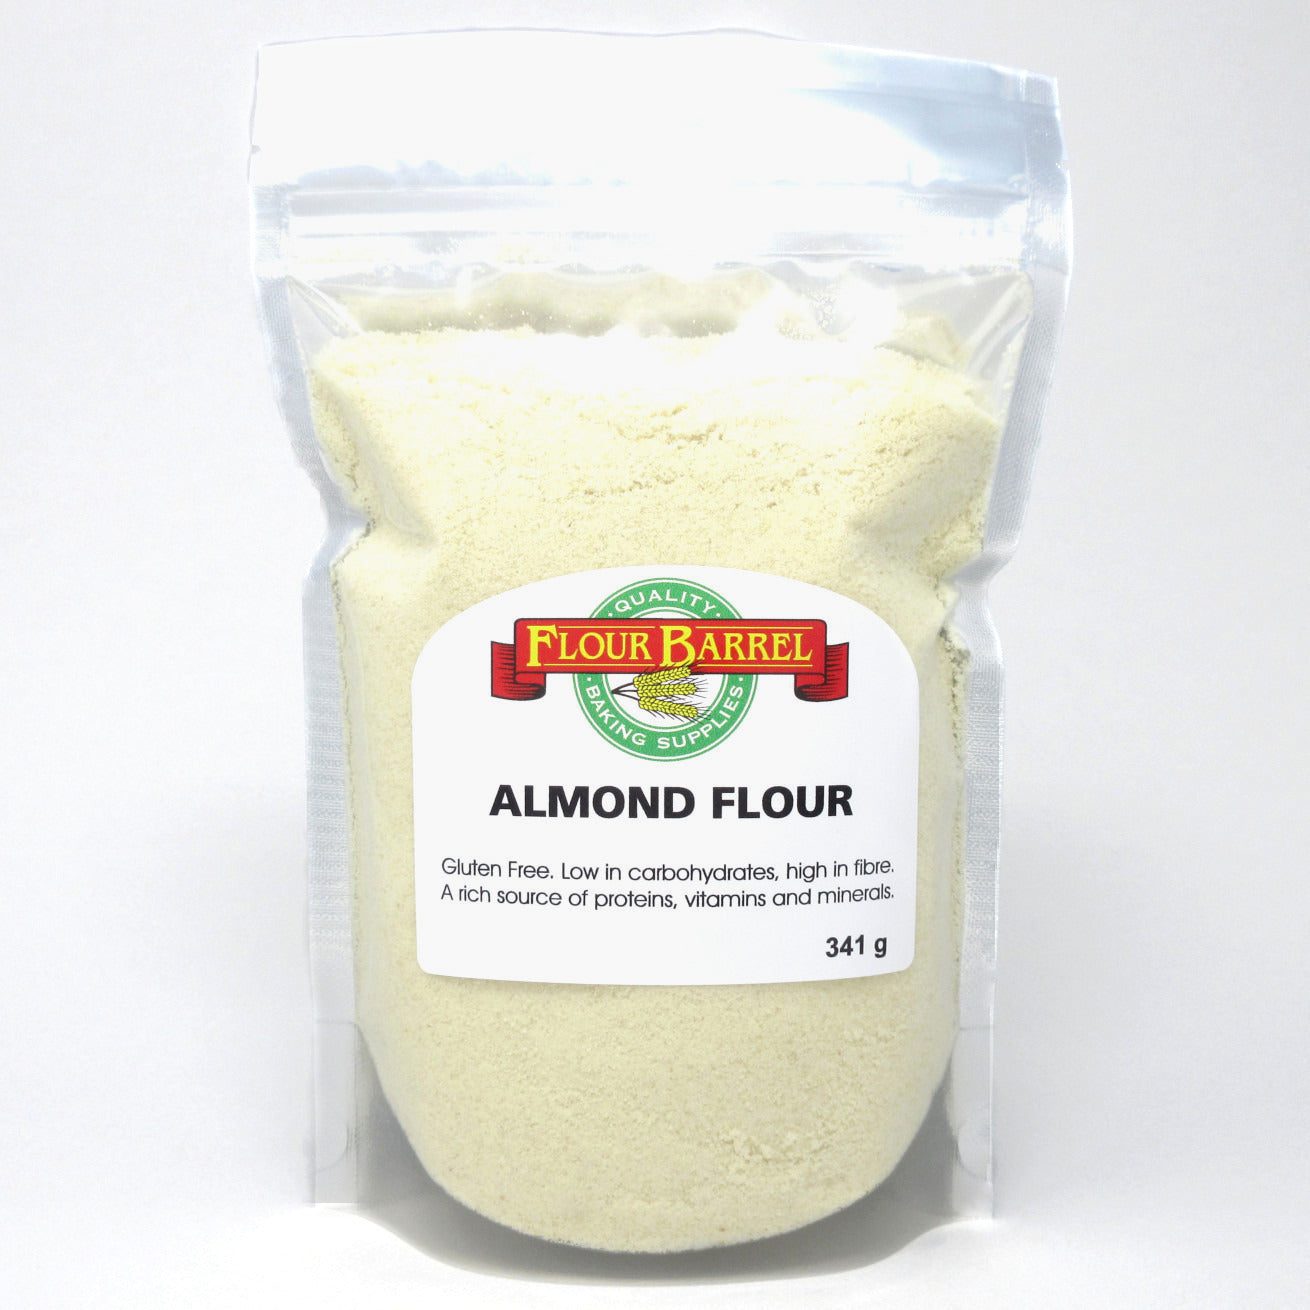 Flour Barrel product image - Almond Flour